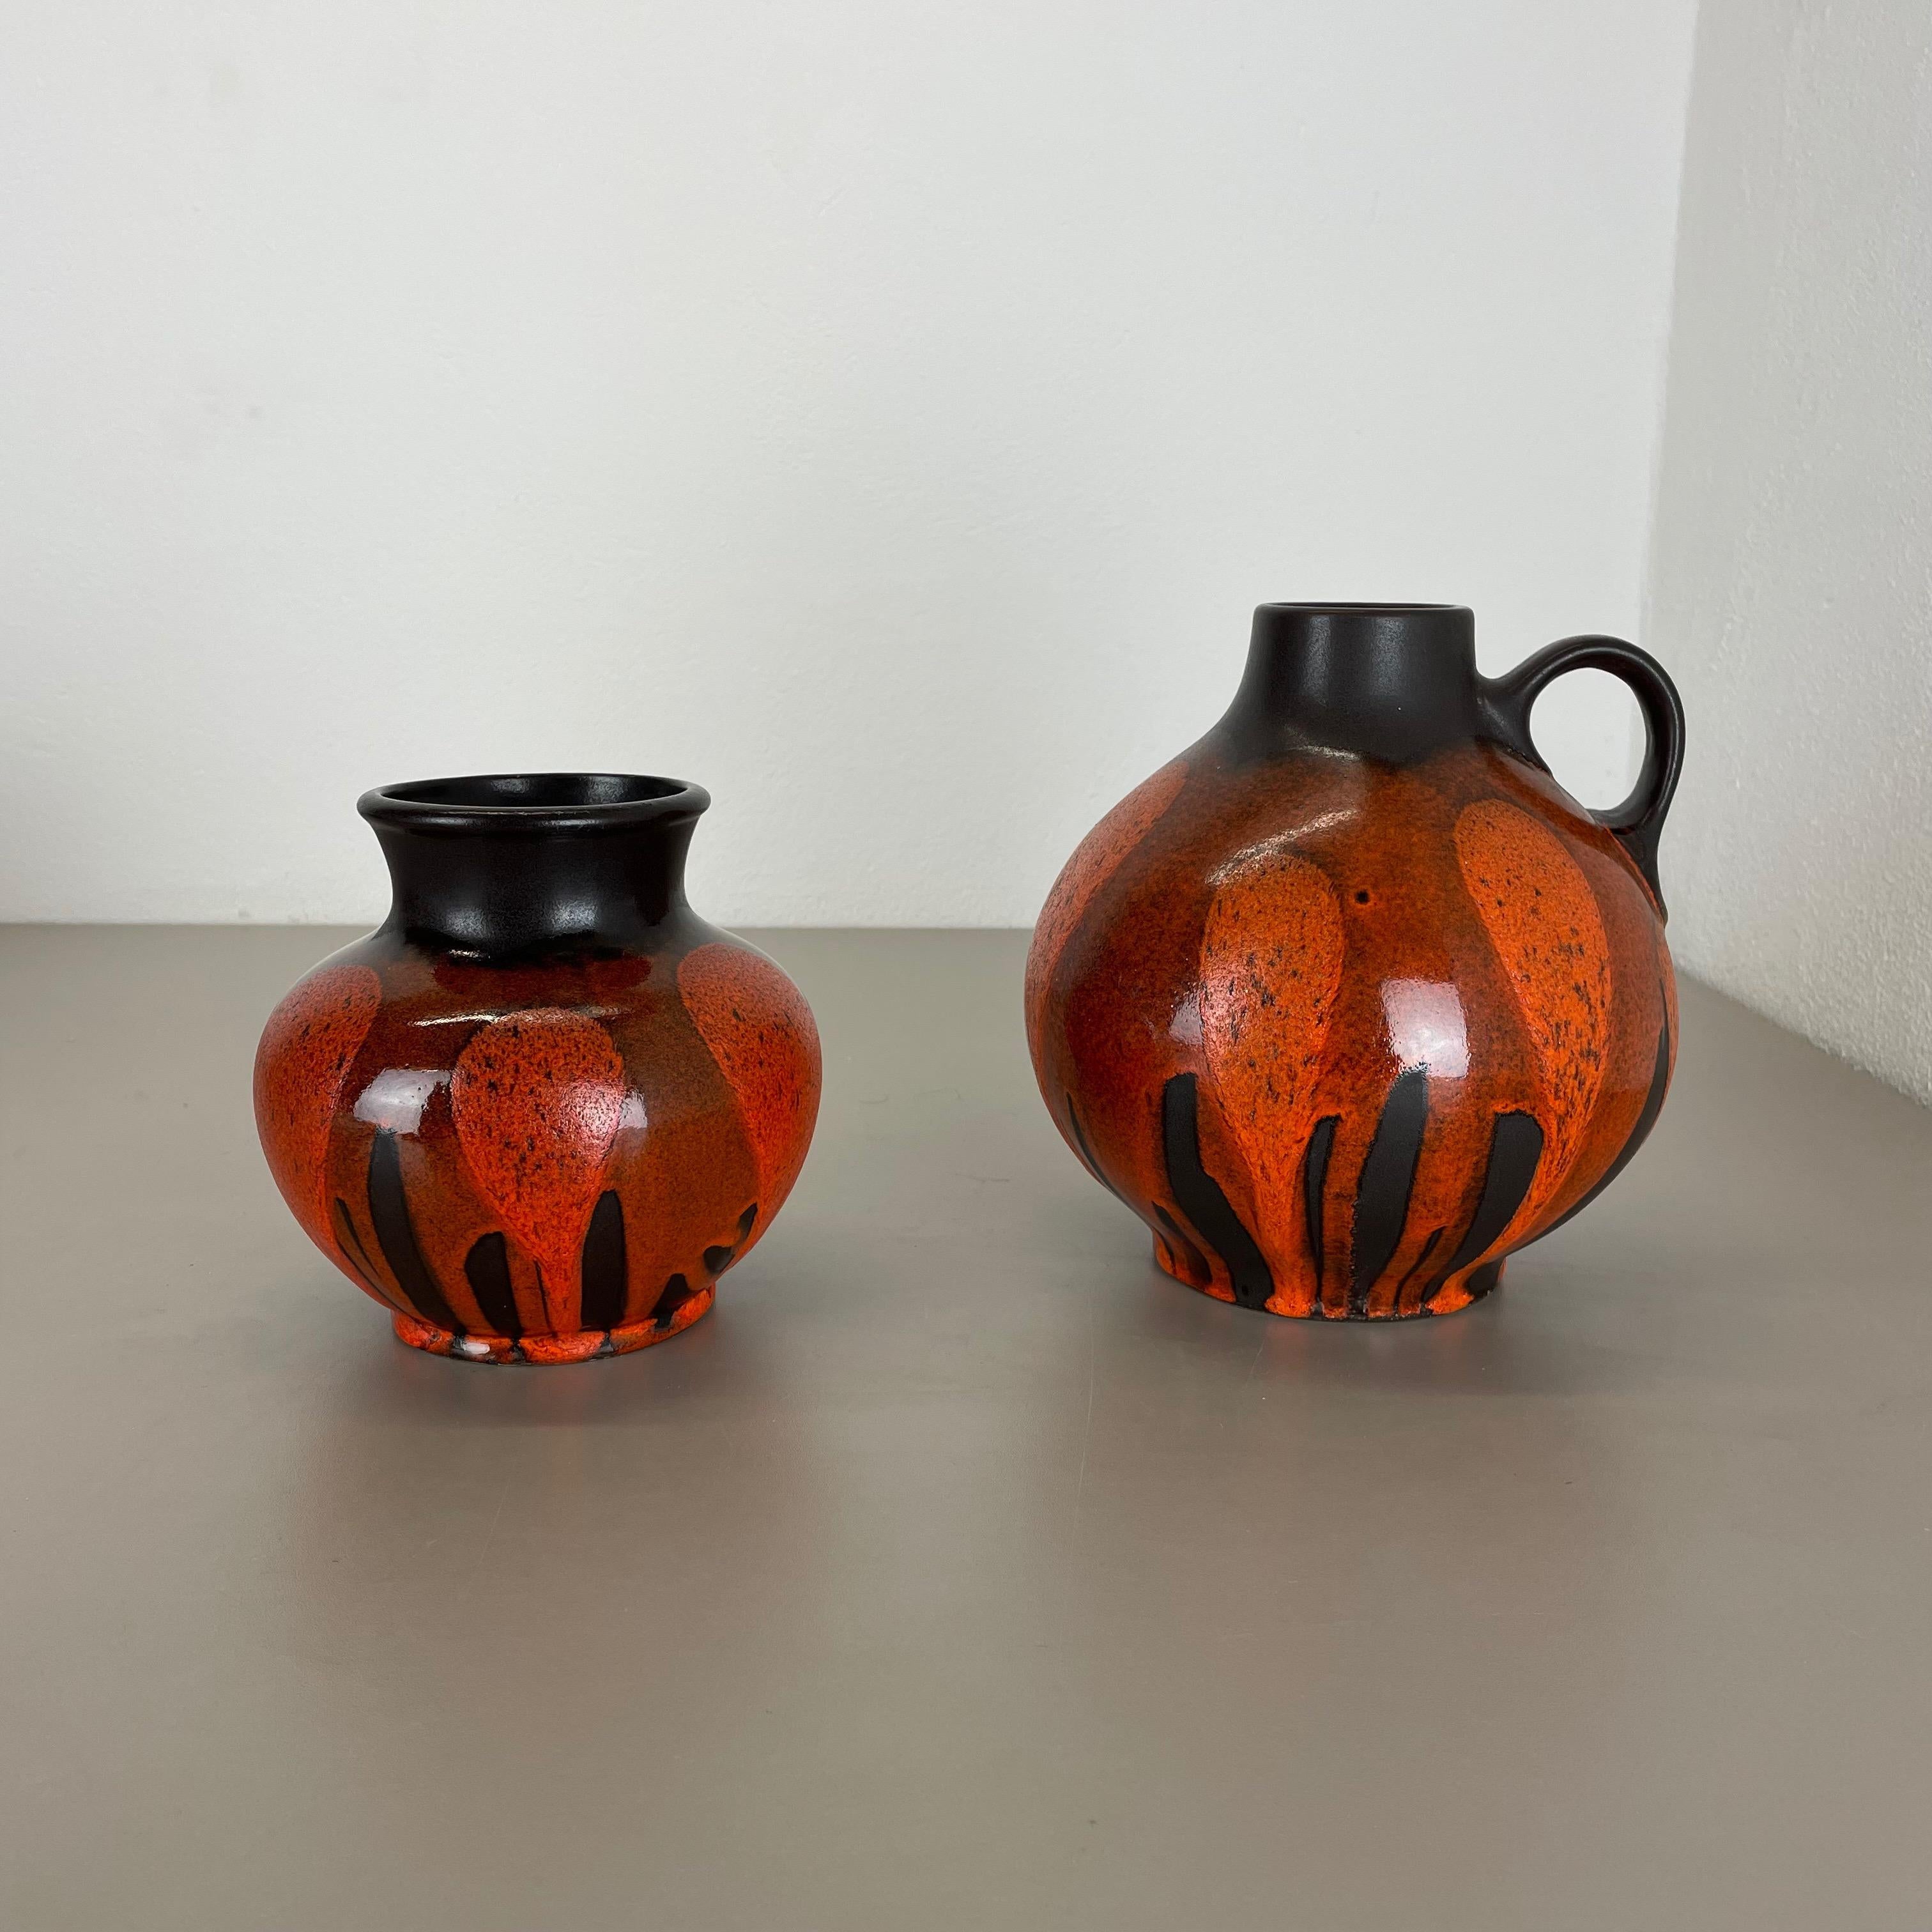 Artikel:

Satz mit zwei Keramikvasen-Elementen


Produzent:

Steuler, Deutschland



Jahrzehnt:

1970s


Beschreibung:

Diese originale Vintage-Vase wurde in den 1970er Jahren in Deutschland hergestellt. Sie ist aus Keramik in einem braunen, gelben